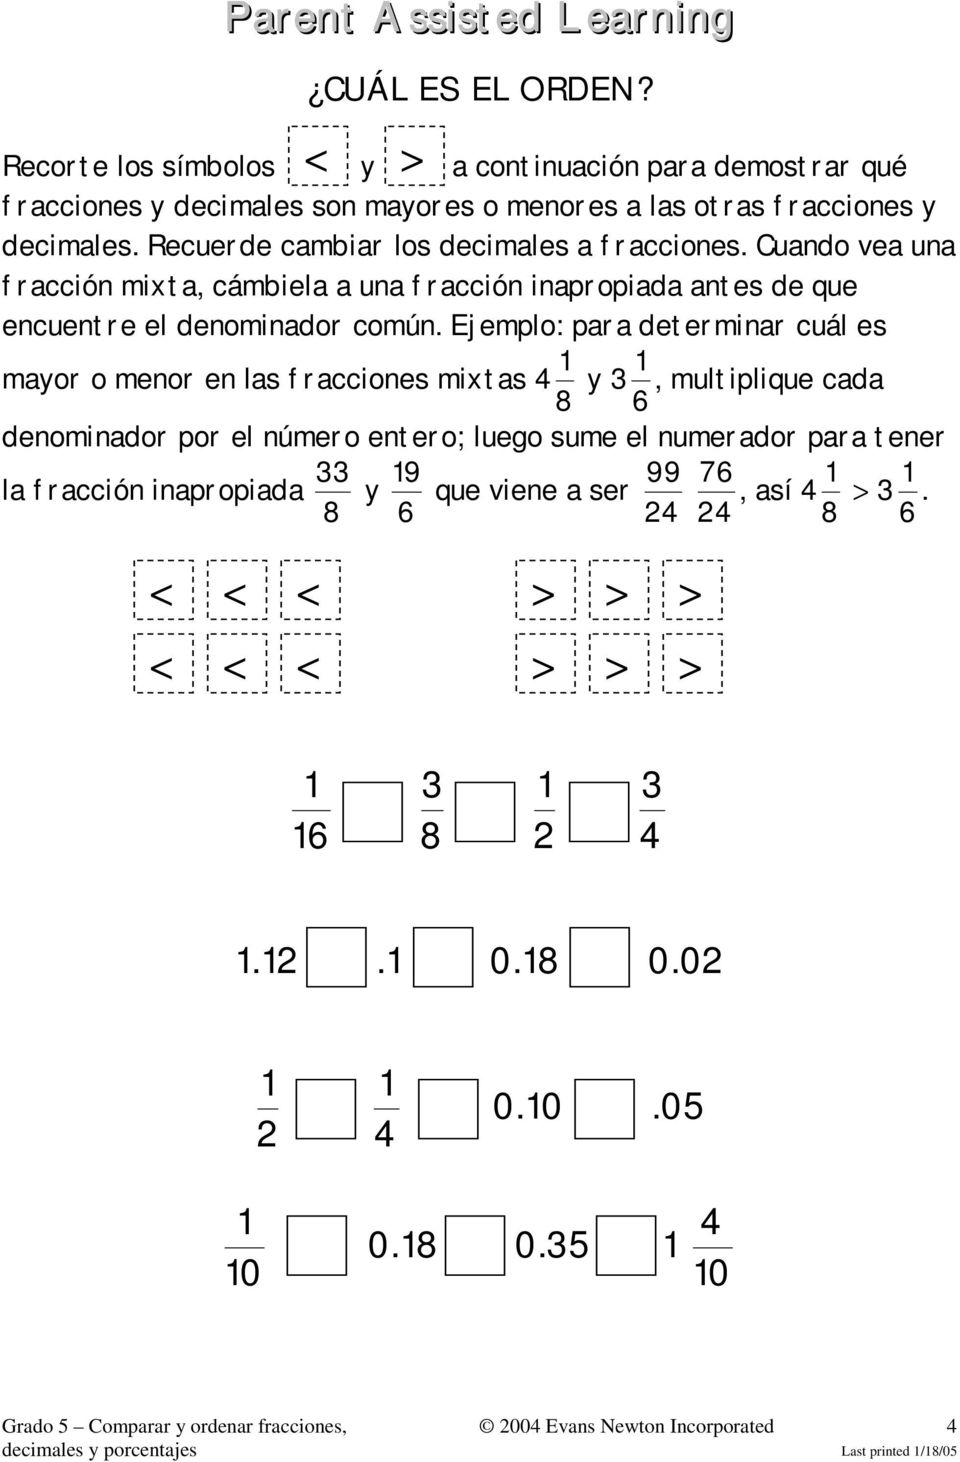 Ejemplo: para determinar cuál es mayor o menor en las fracciones mixtas 8 y 3, multiplique cada 6 denominador por el número entero; luego sume el numerador para tener la